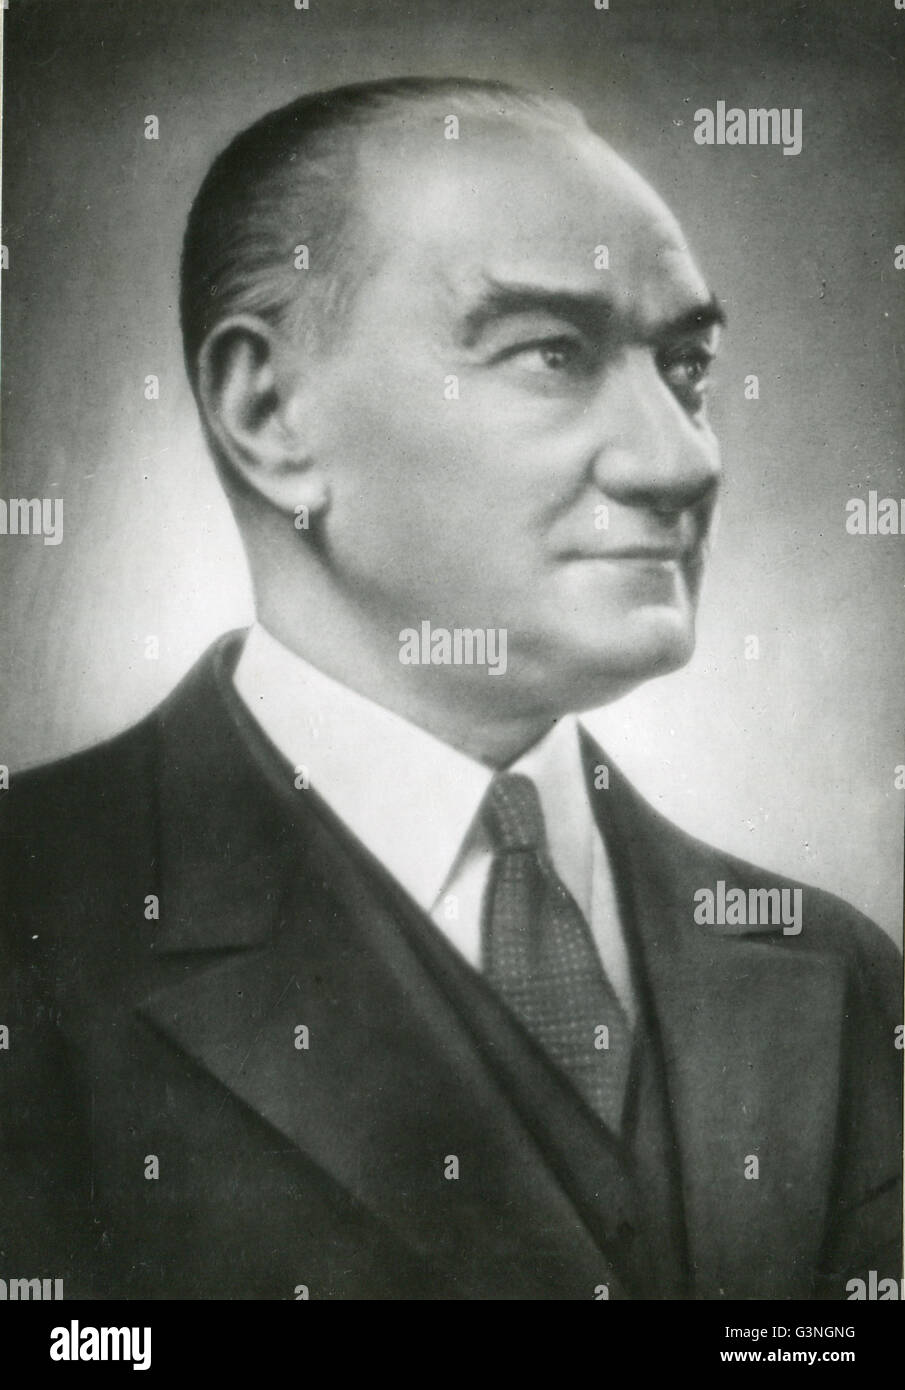 Portrait von Mustafa Kemal Atatürk (1882-1938), der erste Präsident der türkischen Republik. Seiner Führung ermöglichen die Republik, große Fortschritte politisch zu einem modernen Staat zu machen. Stockfoto